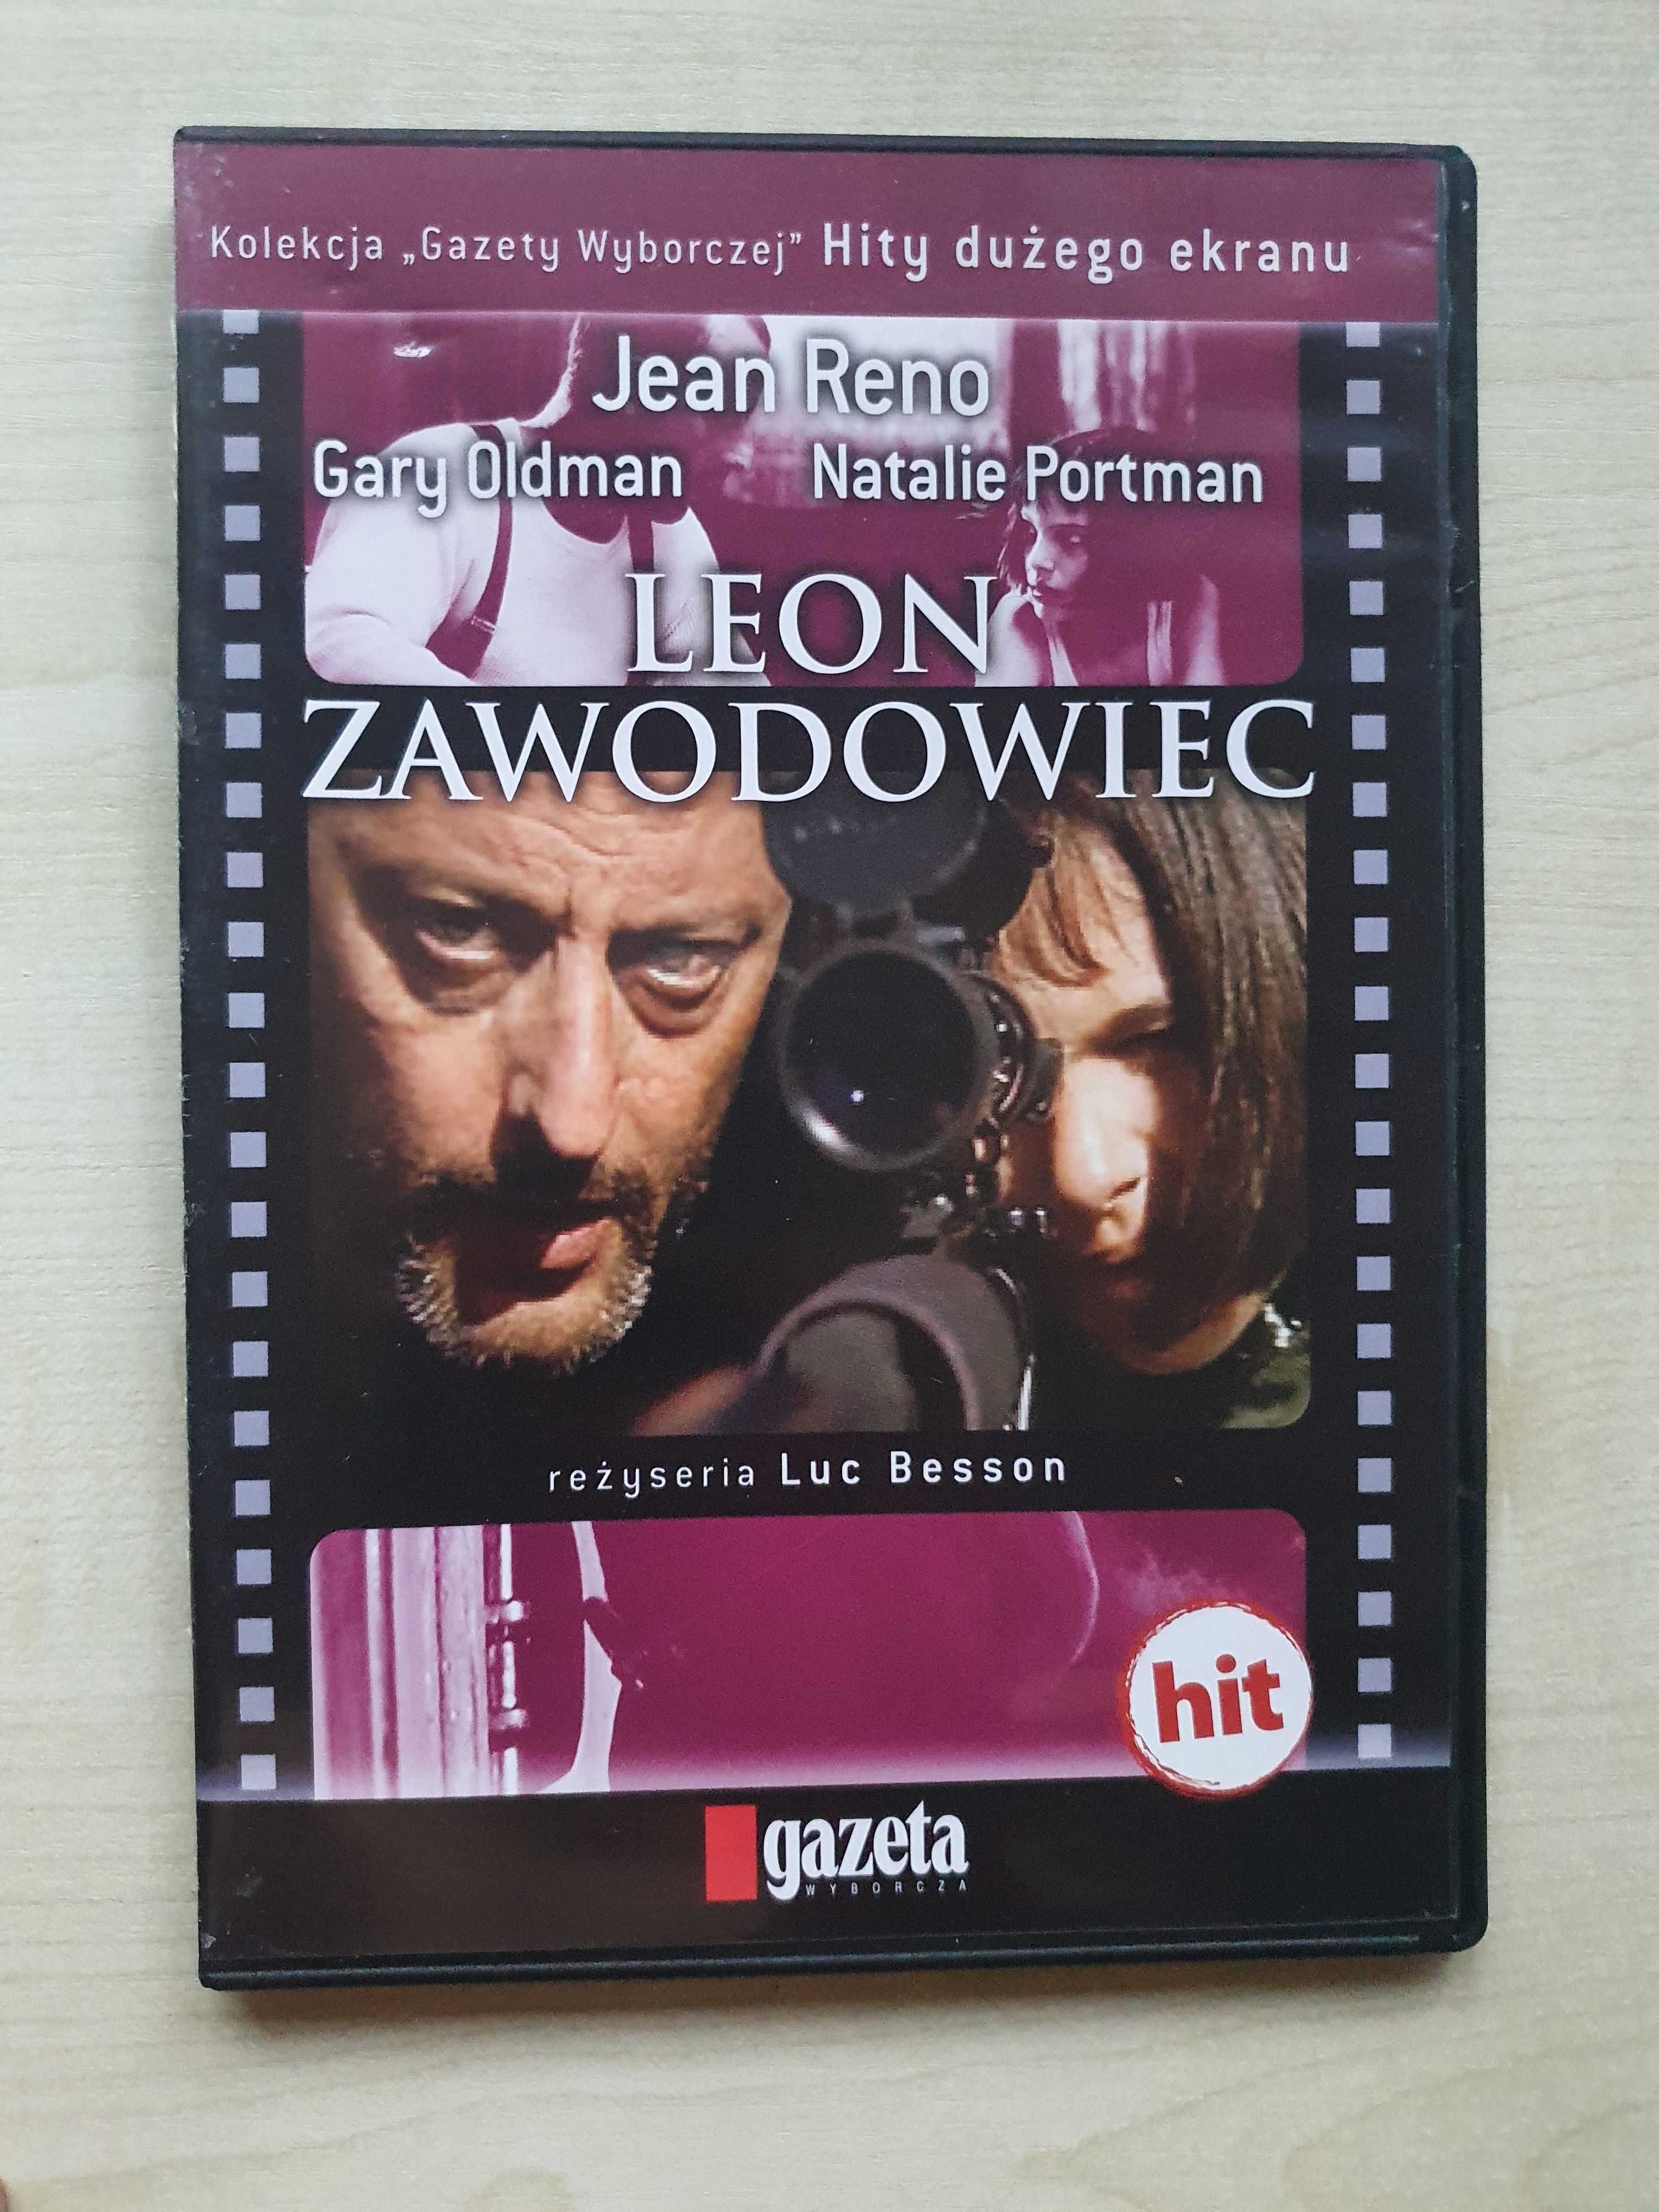 Film Leon Zawodowiec - Hity dużego ekranu